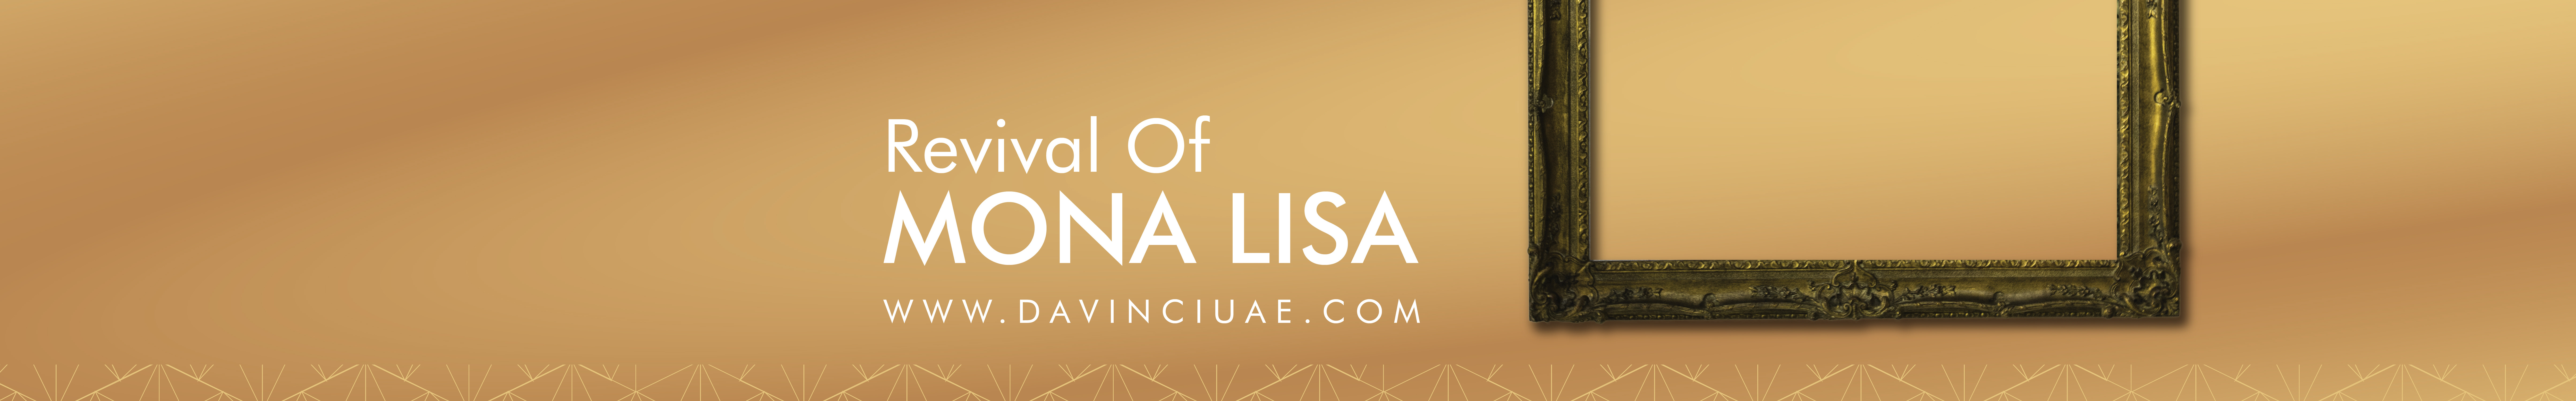 Da Vinci's profile banner